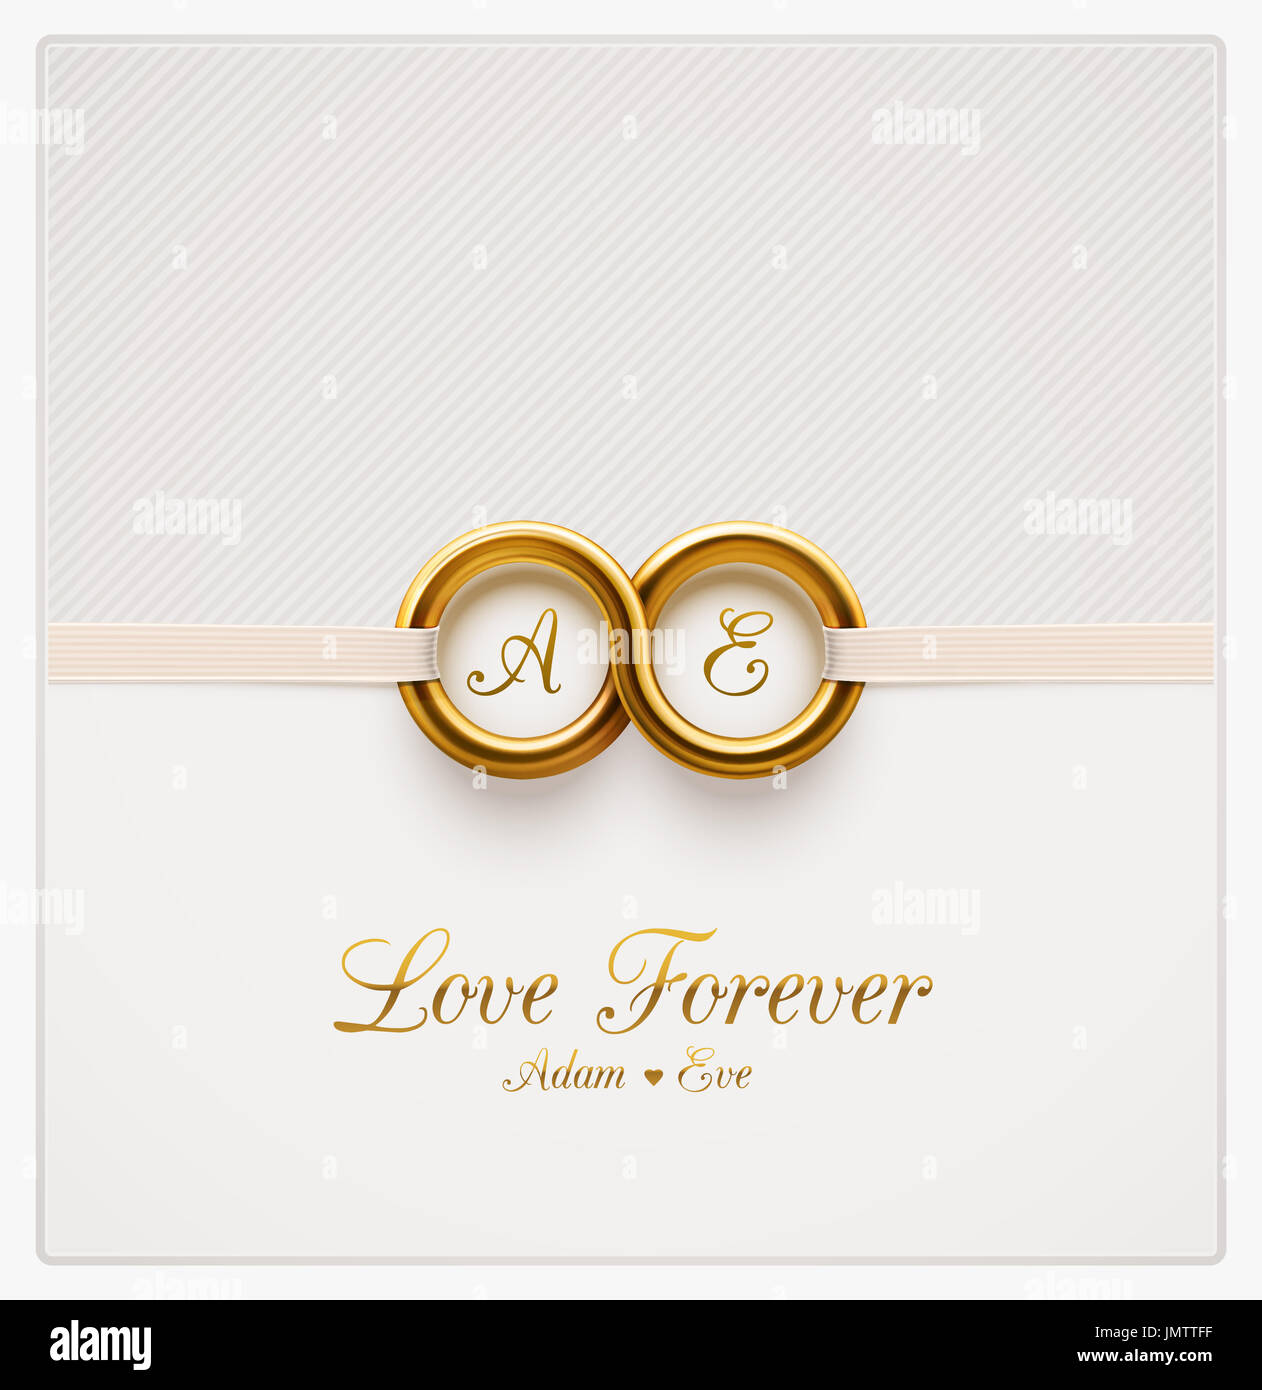 L'amour pour toujours, d'invitation de mariage, eps 10 Banque D'Images